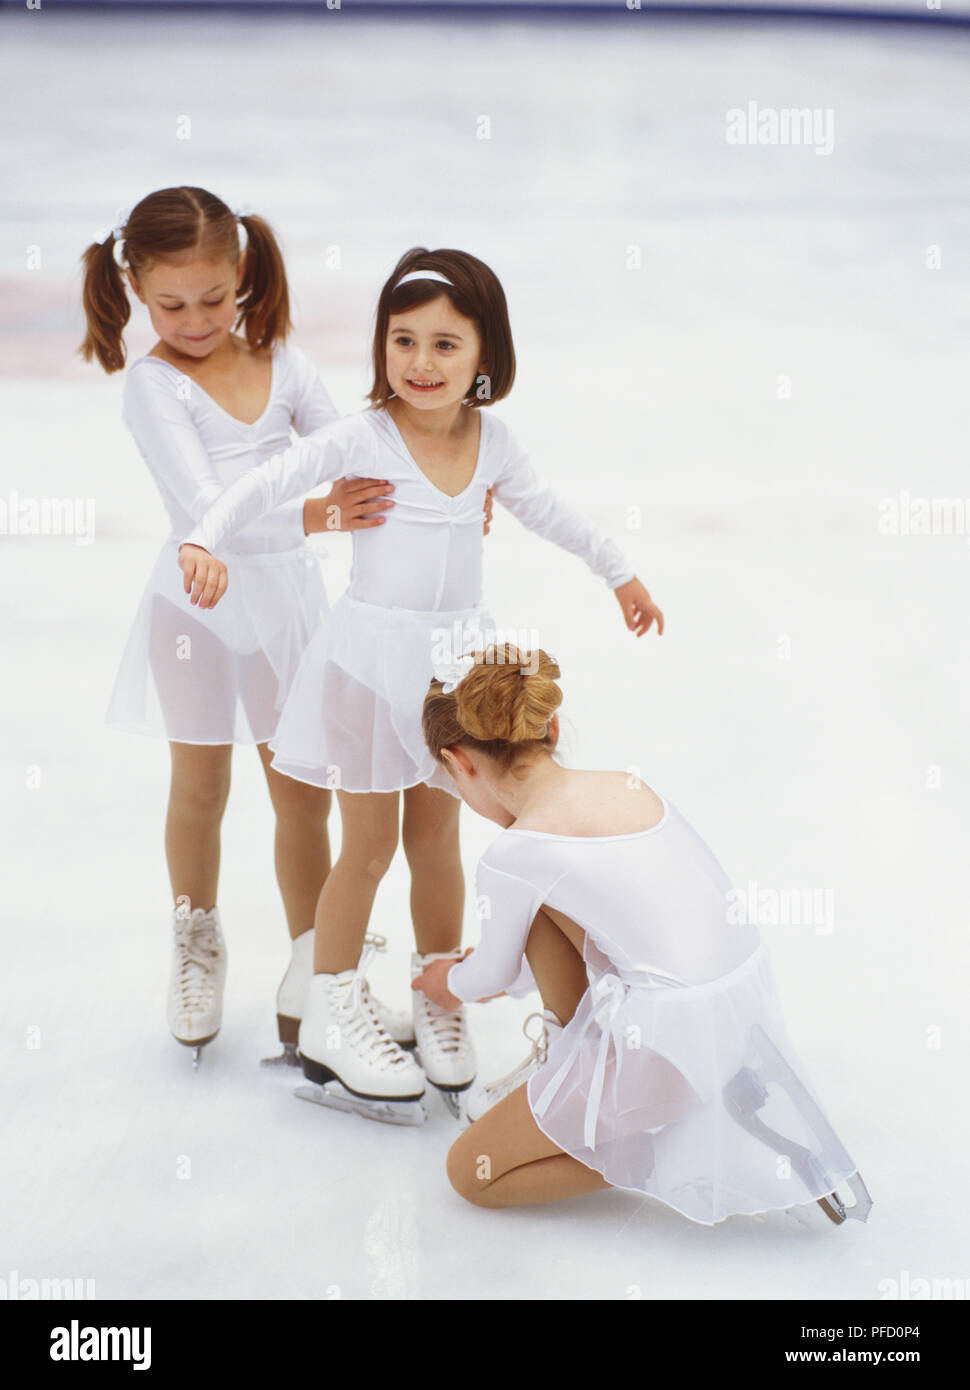 Ice skating costumes immagini e fotografie stock ad alta risoluzione - Alamy